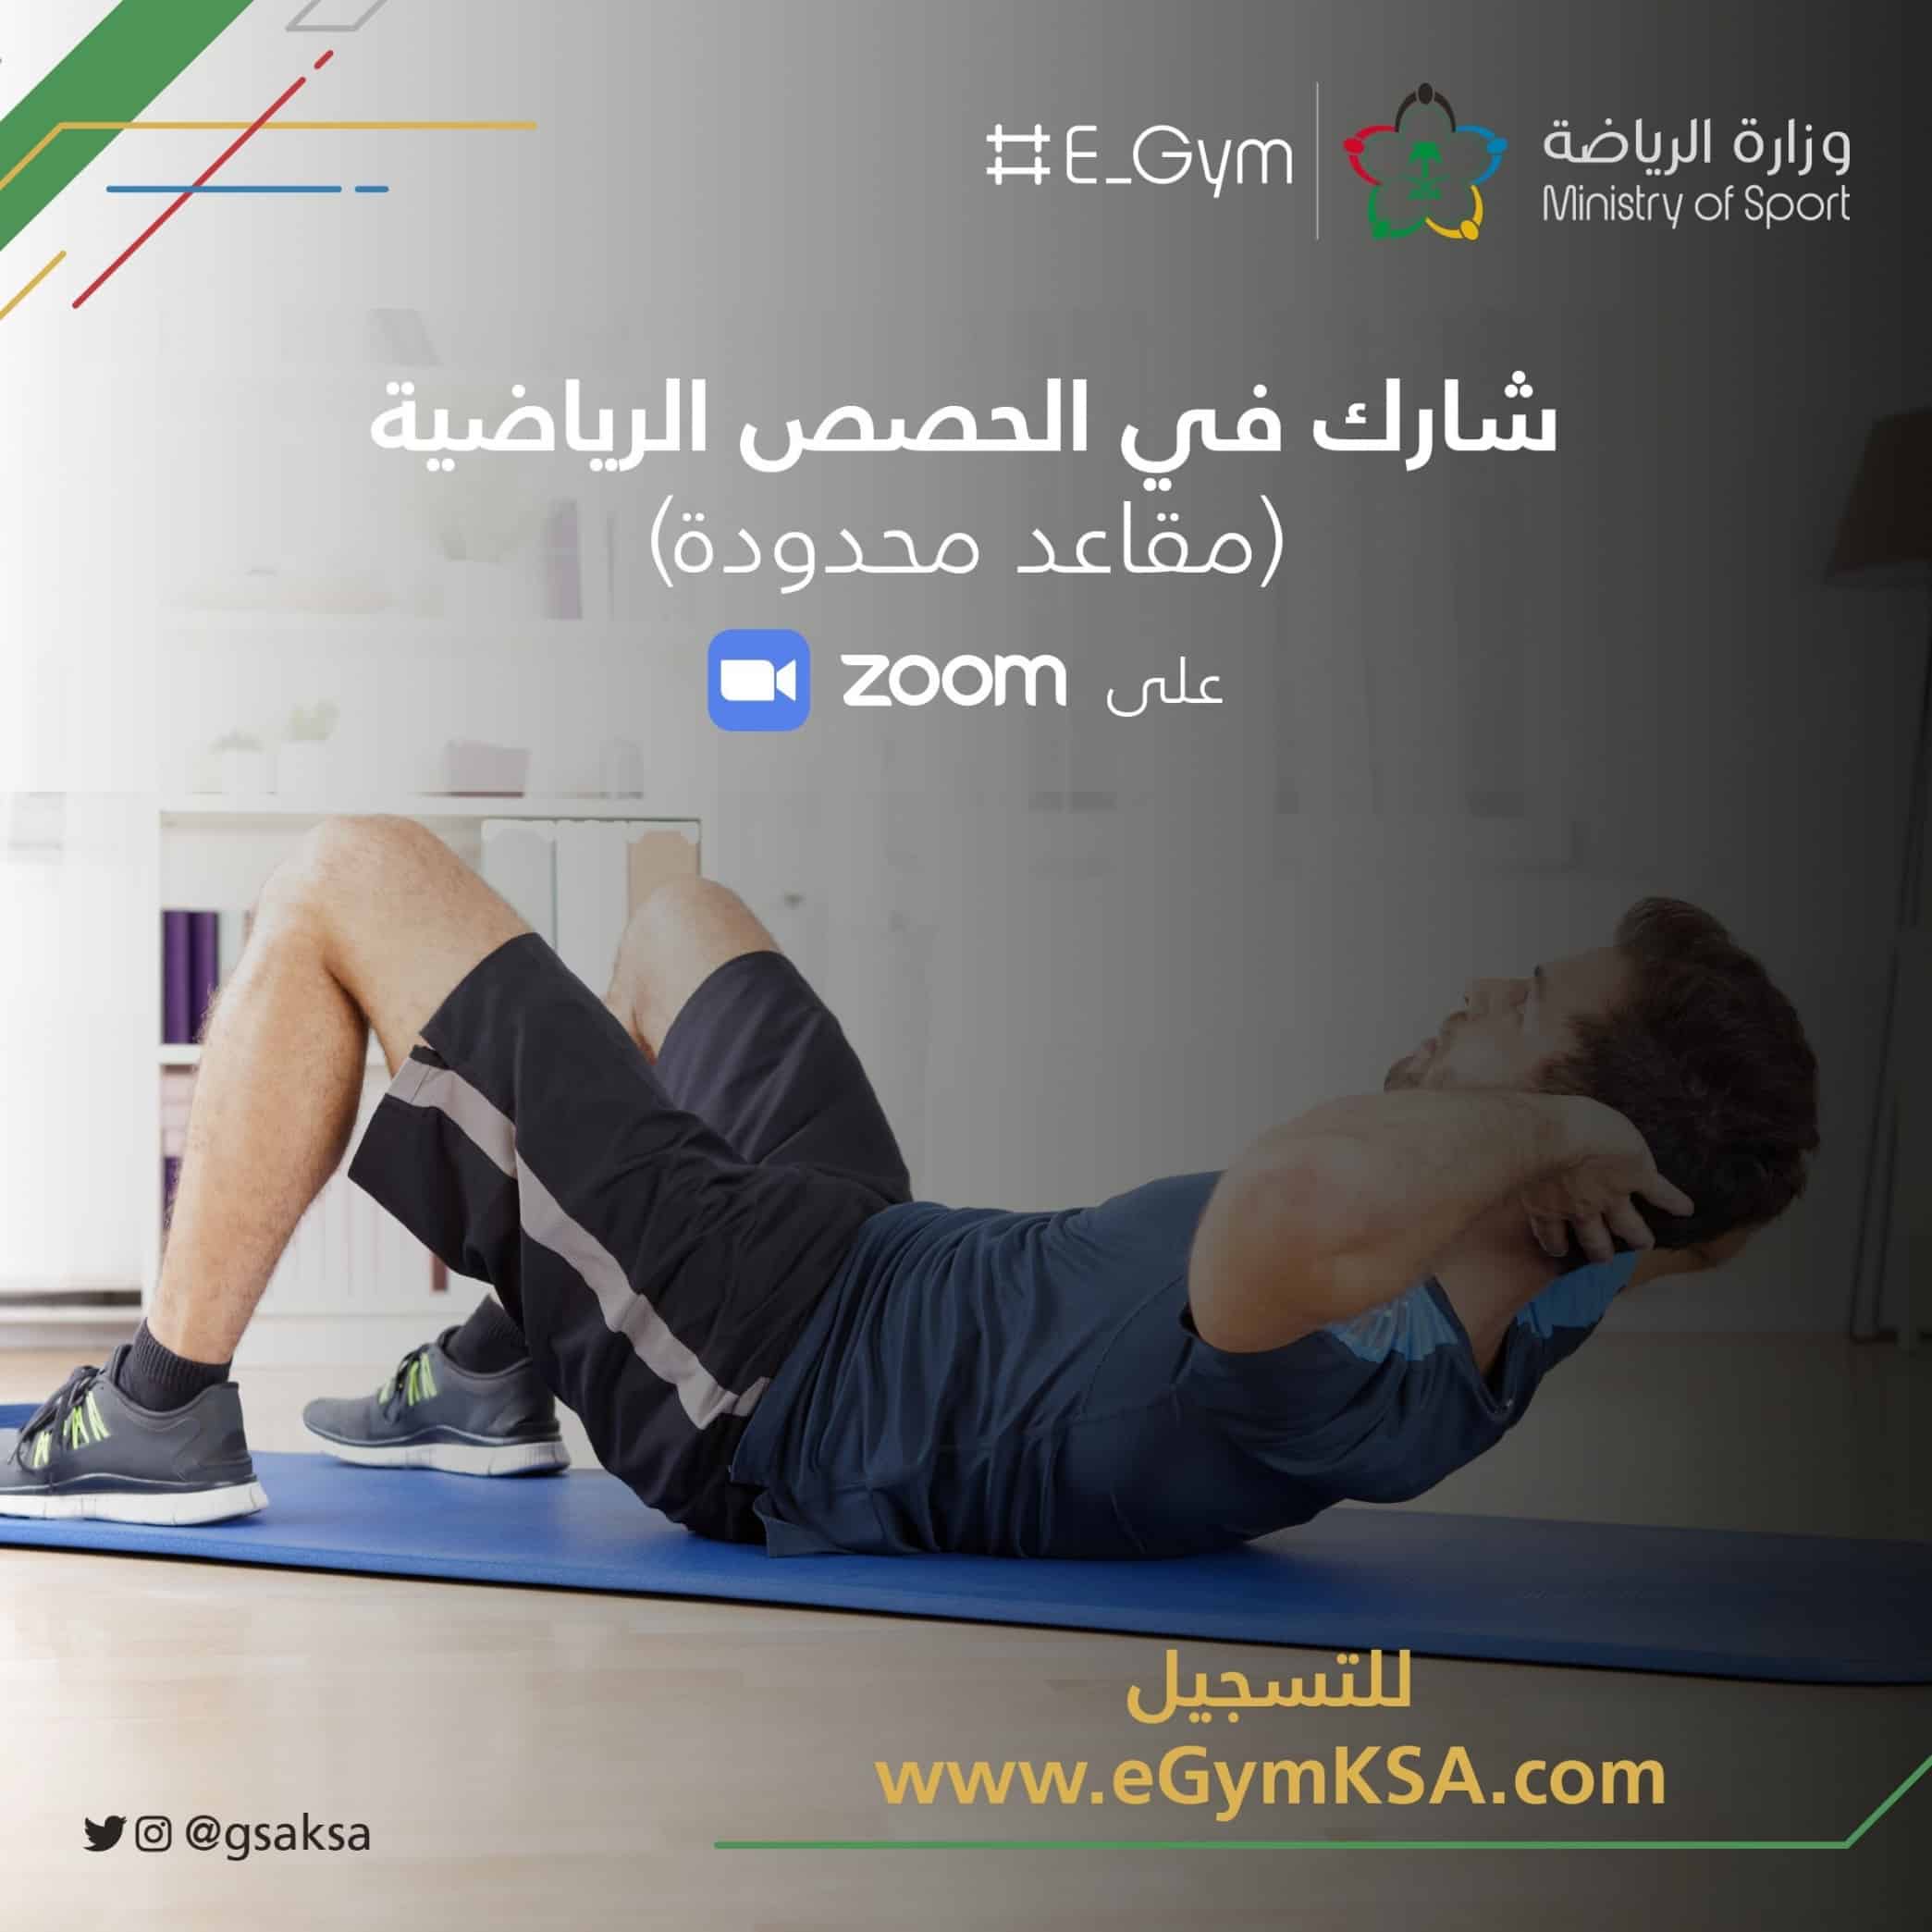 وزارة الرياضة تُطلق مبادرة E_gym